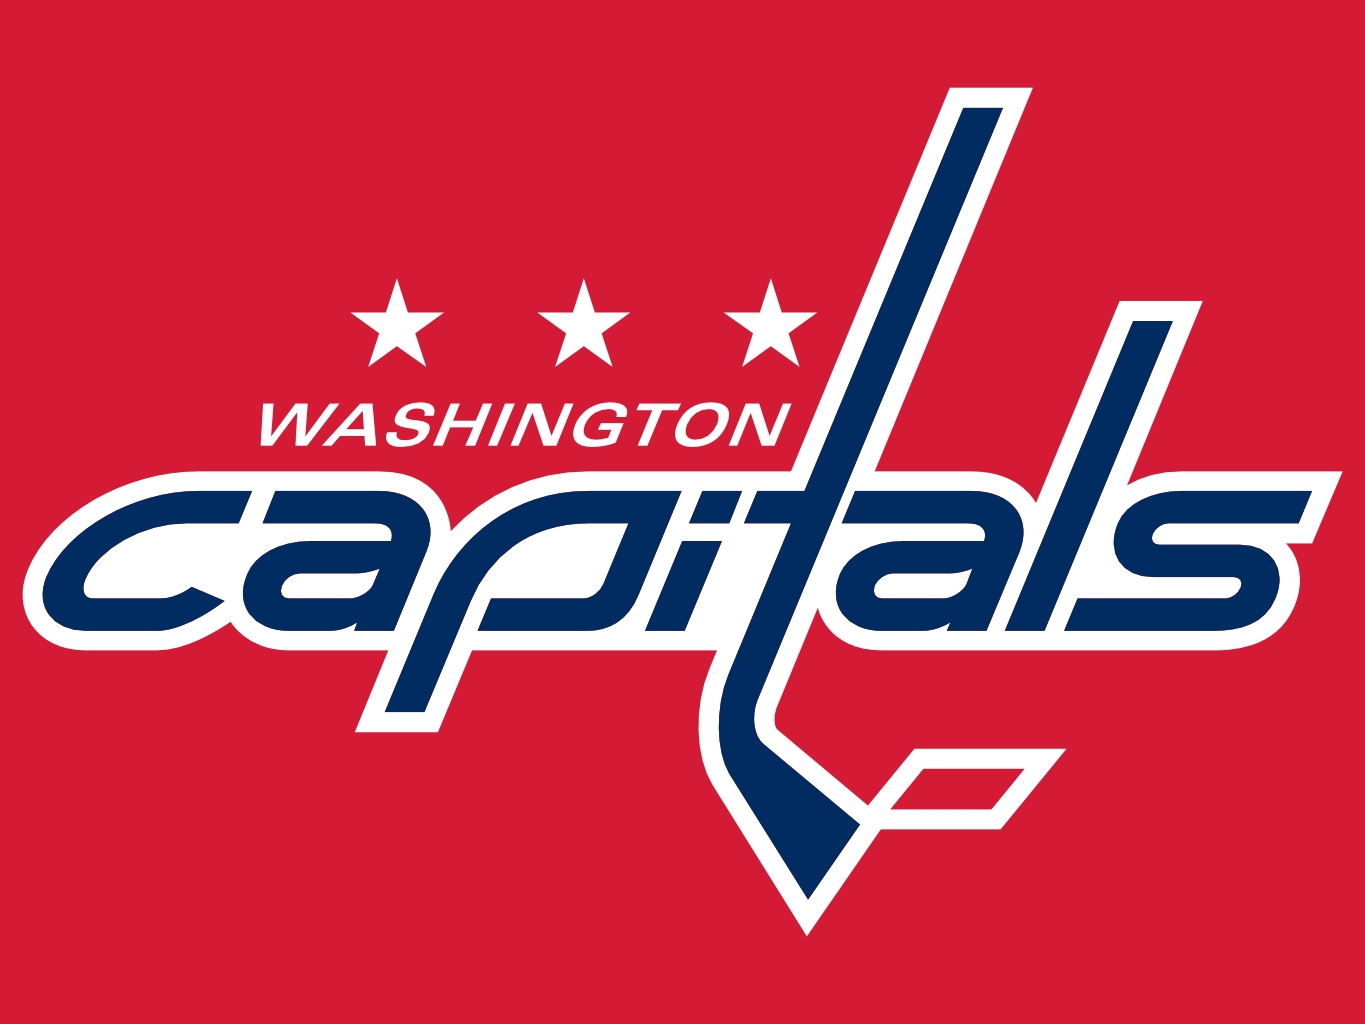 Buy Washington Capitals Tickets Today